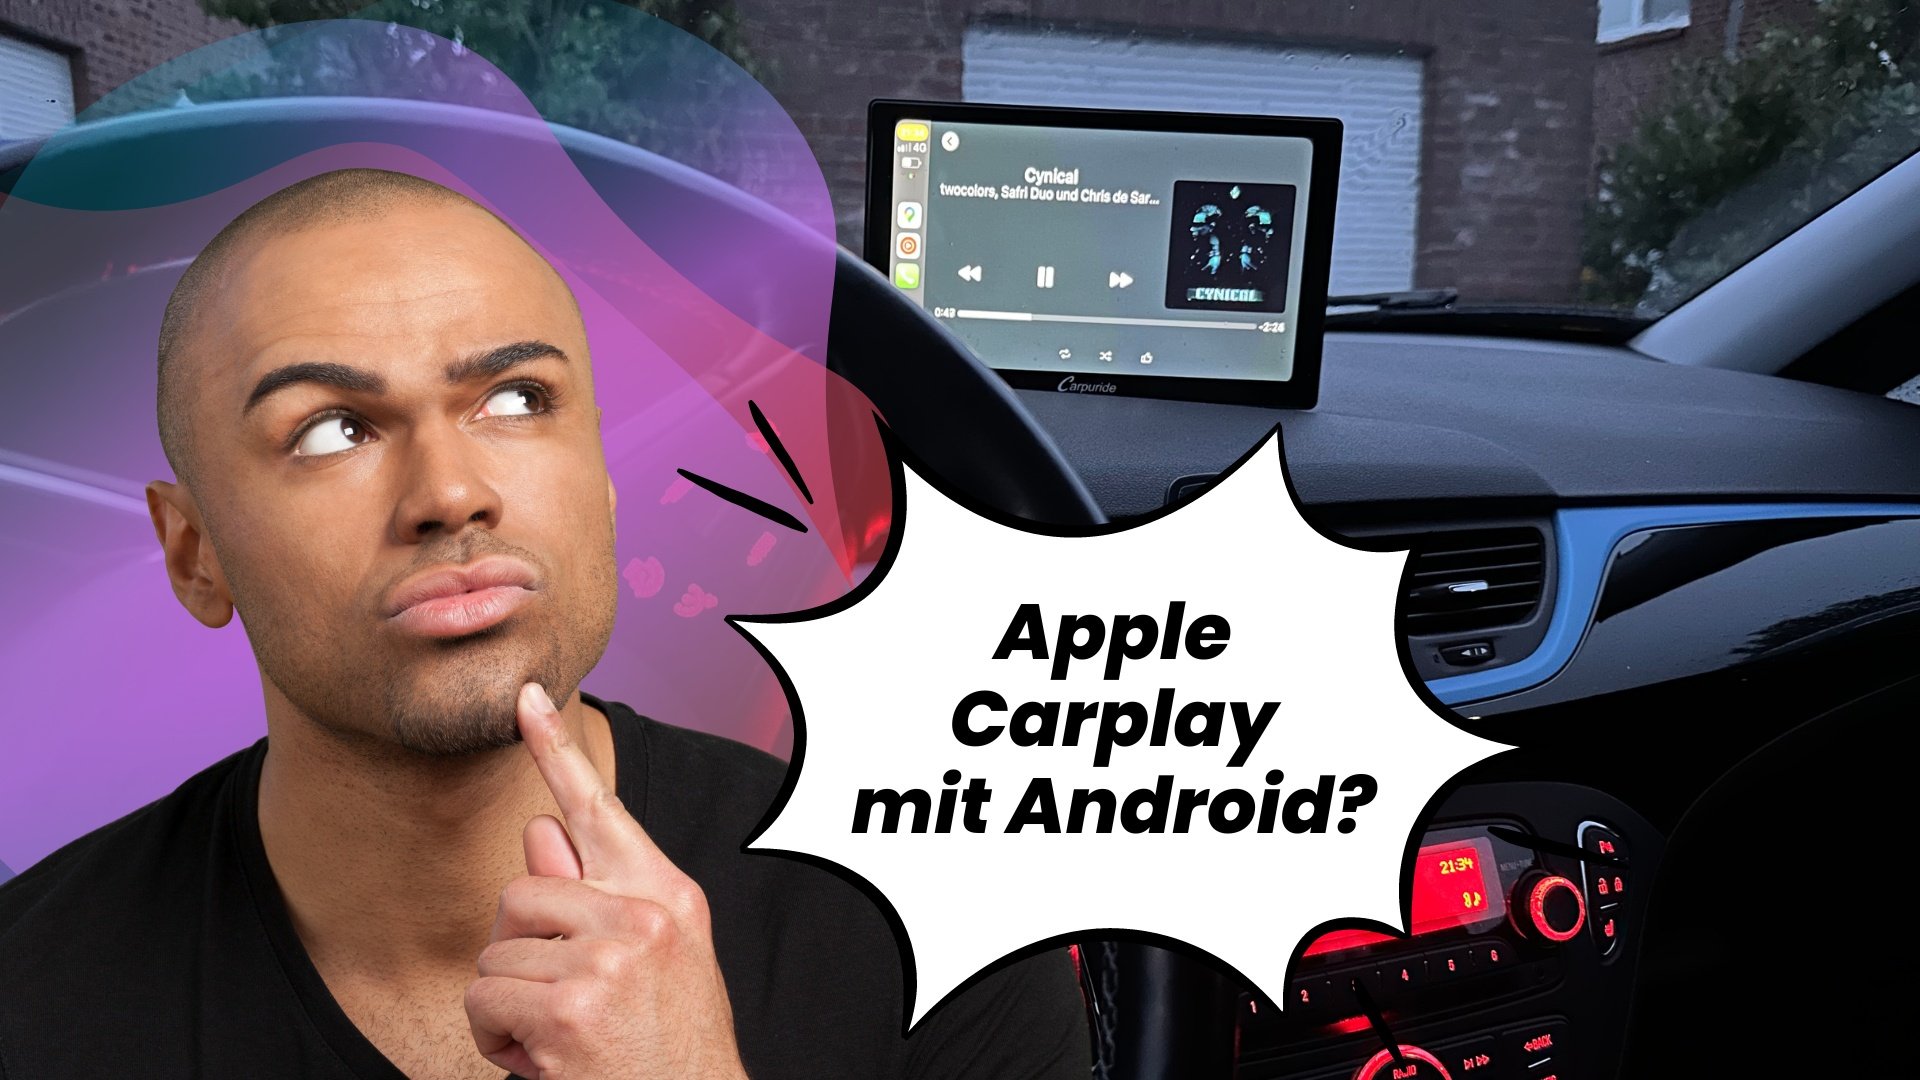 Kann Ich Carplay auch mit Android nutzen?